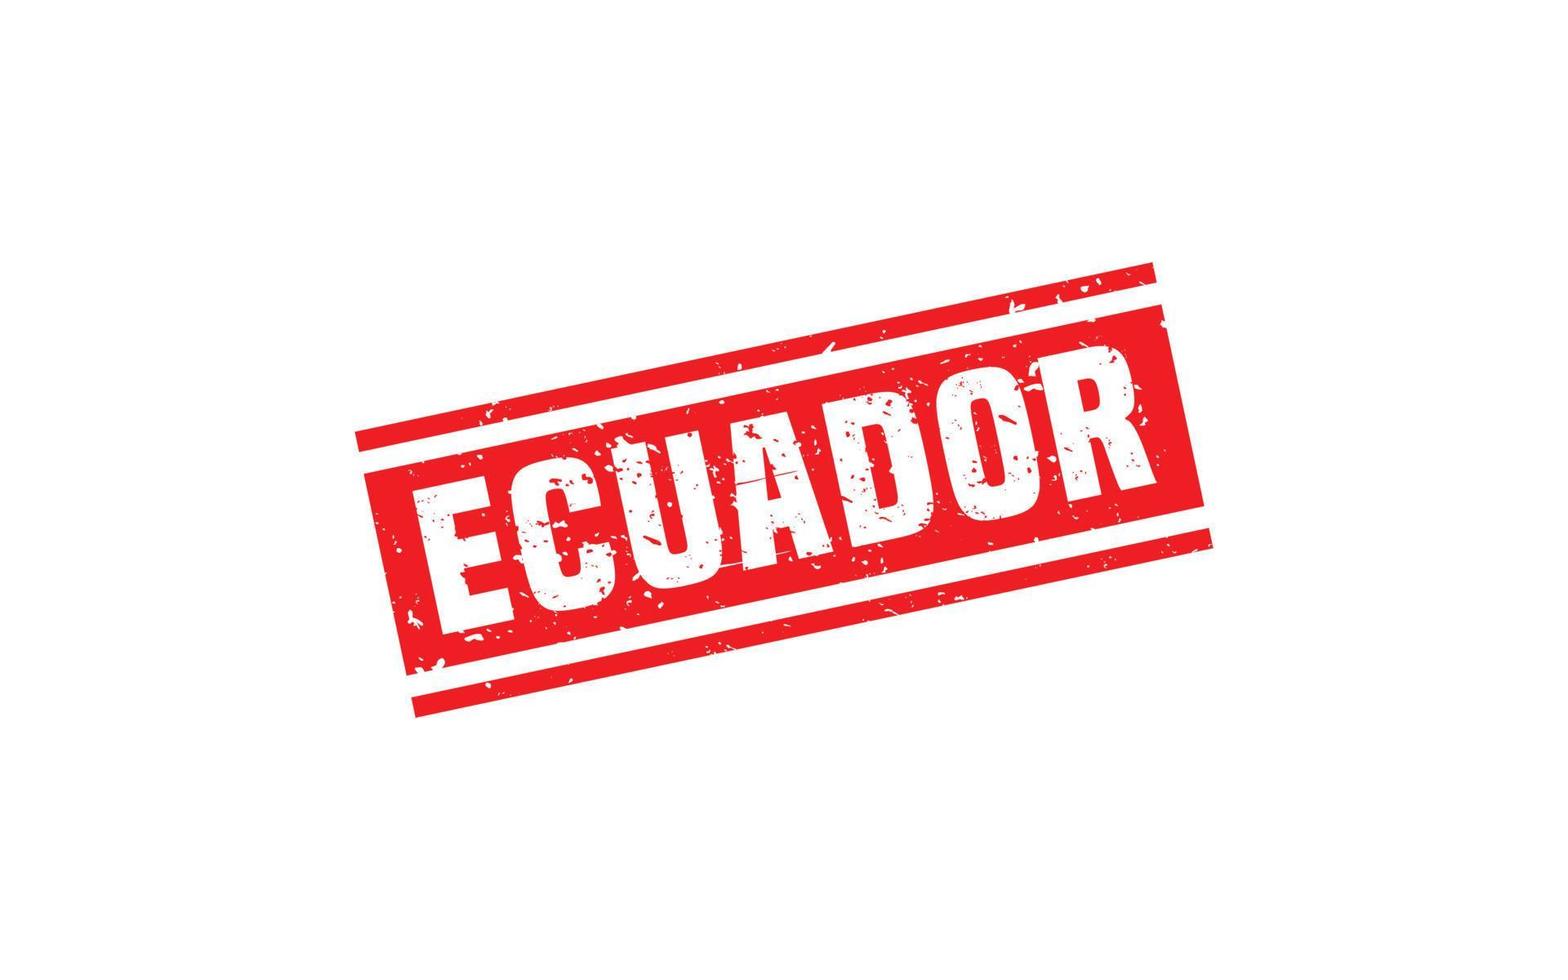 ecuador stämpel sudd med grunge stil på vit bakgrund vektor